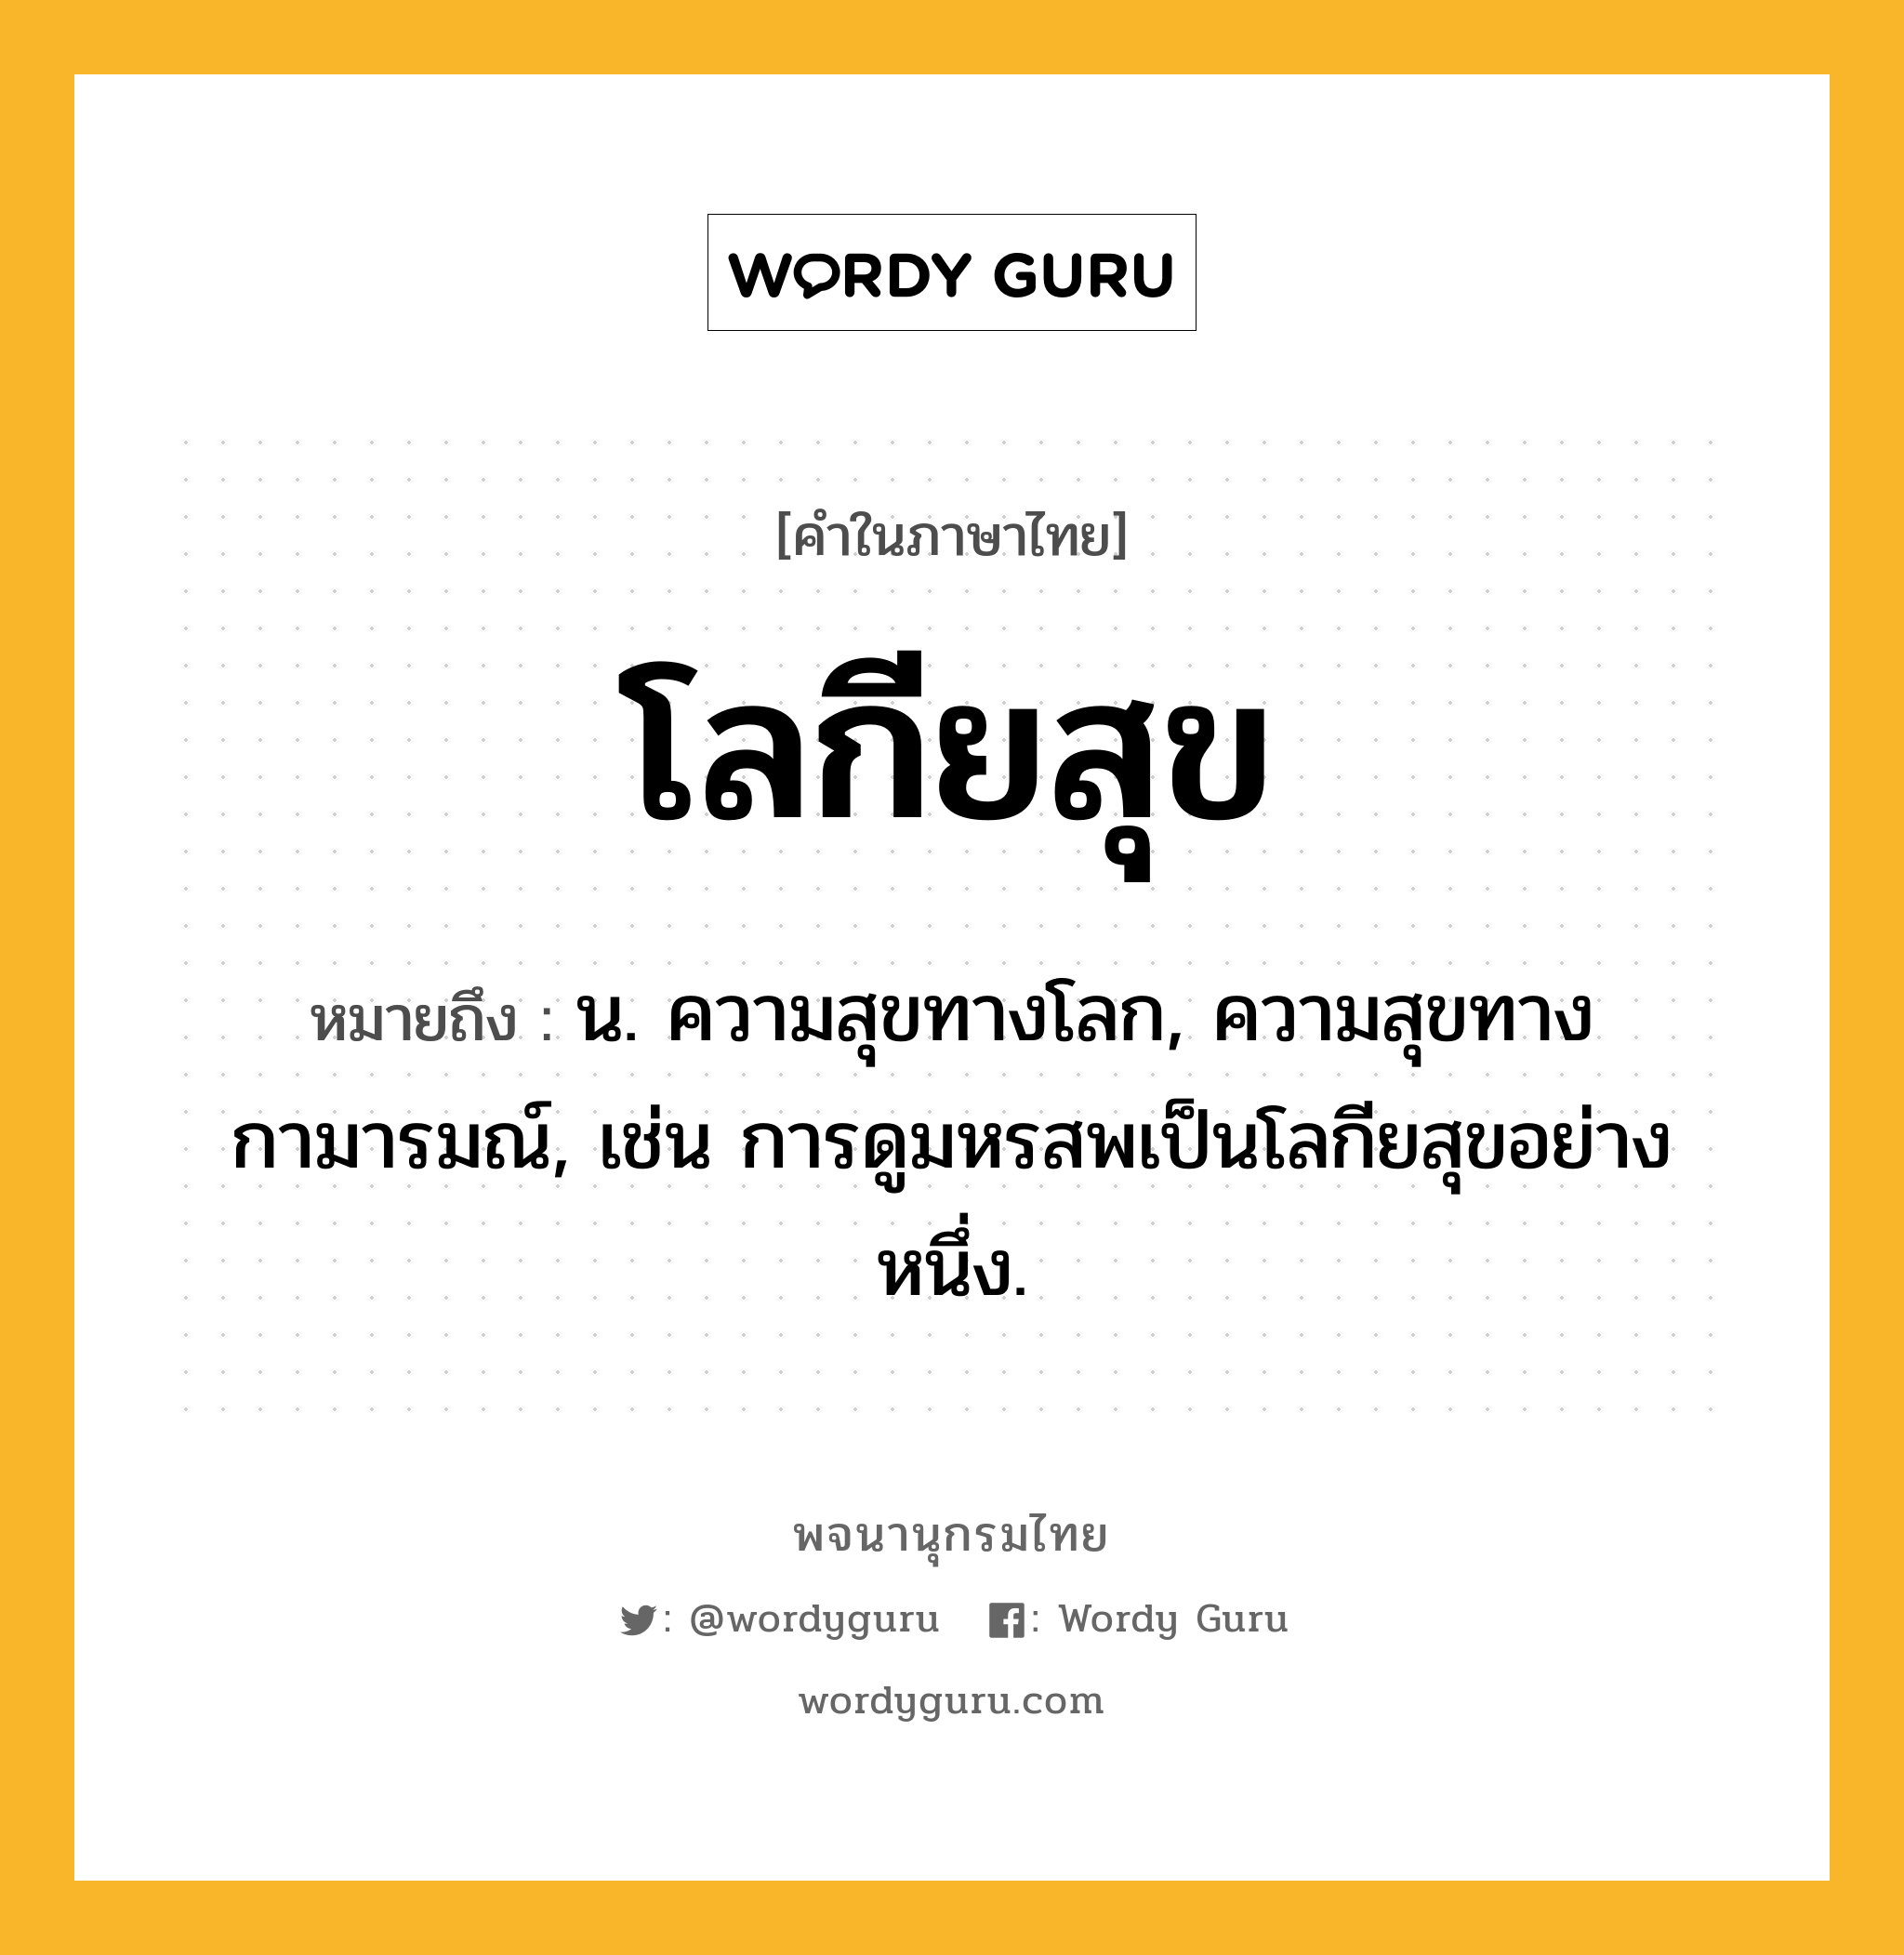 โลกียสุข ความหมาย หมายถึงอะไร?, คำในภาษาไทย โลกียสุข หมายถึง น. ความสุขทางโลก, ความสุขทางกามารมณ์, เช่น การดูมหรสพเป็นโลกียสุขอย่างหนึ่ง.